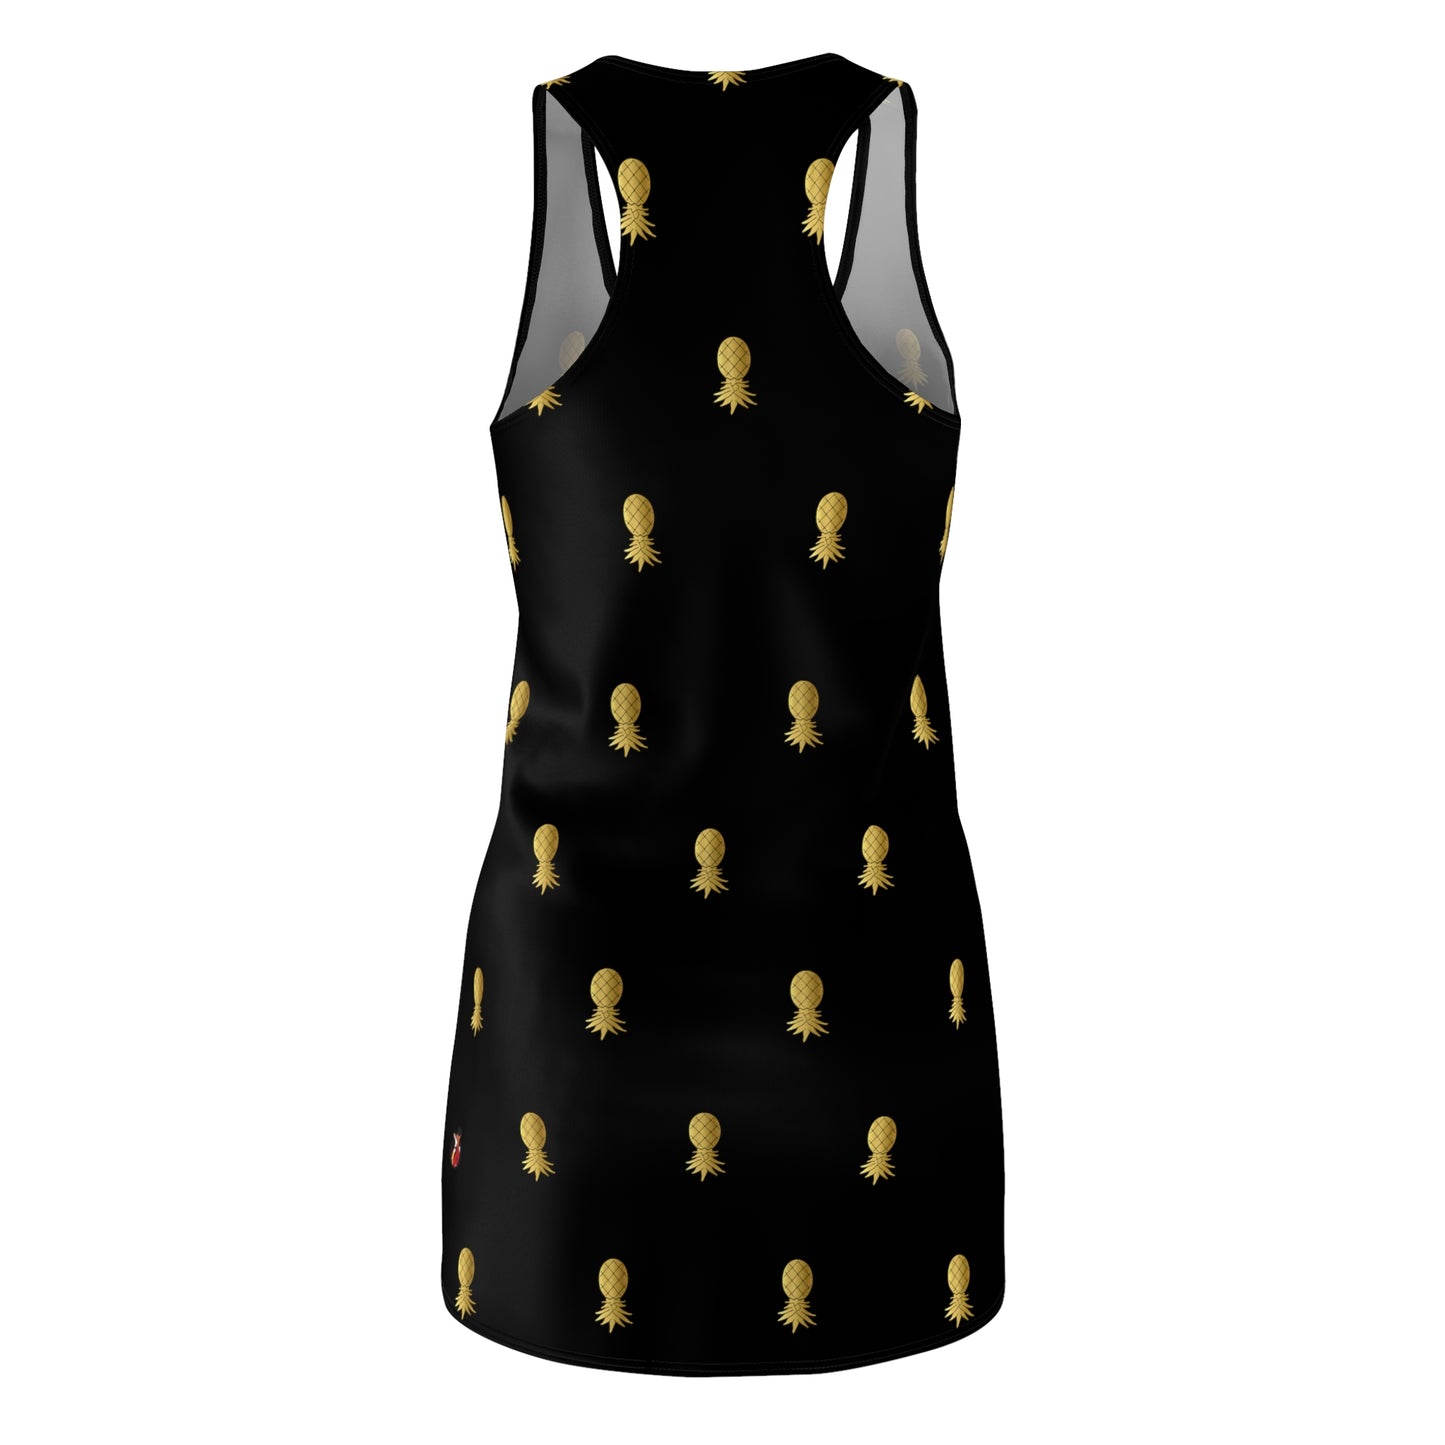 Snooty Fox Art Women's Cut & Sew Racerback Dress (AOP) - Gold Pineapple